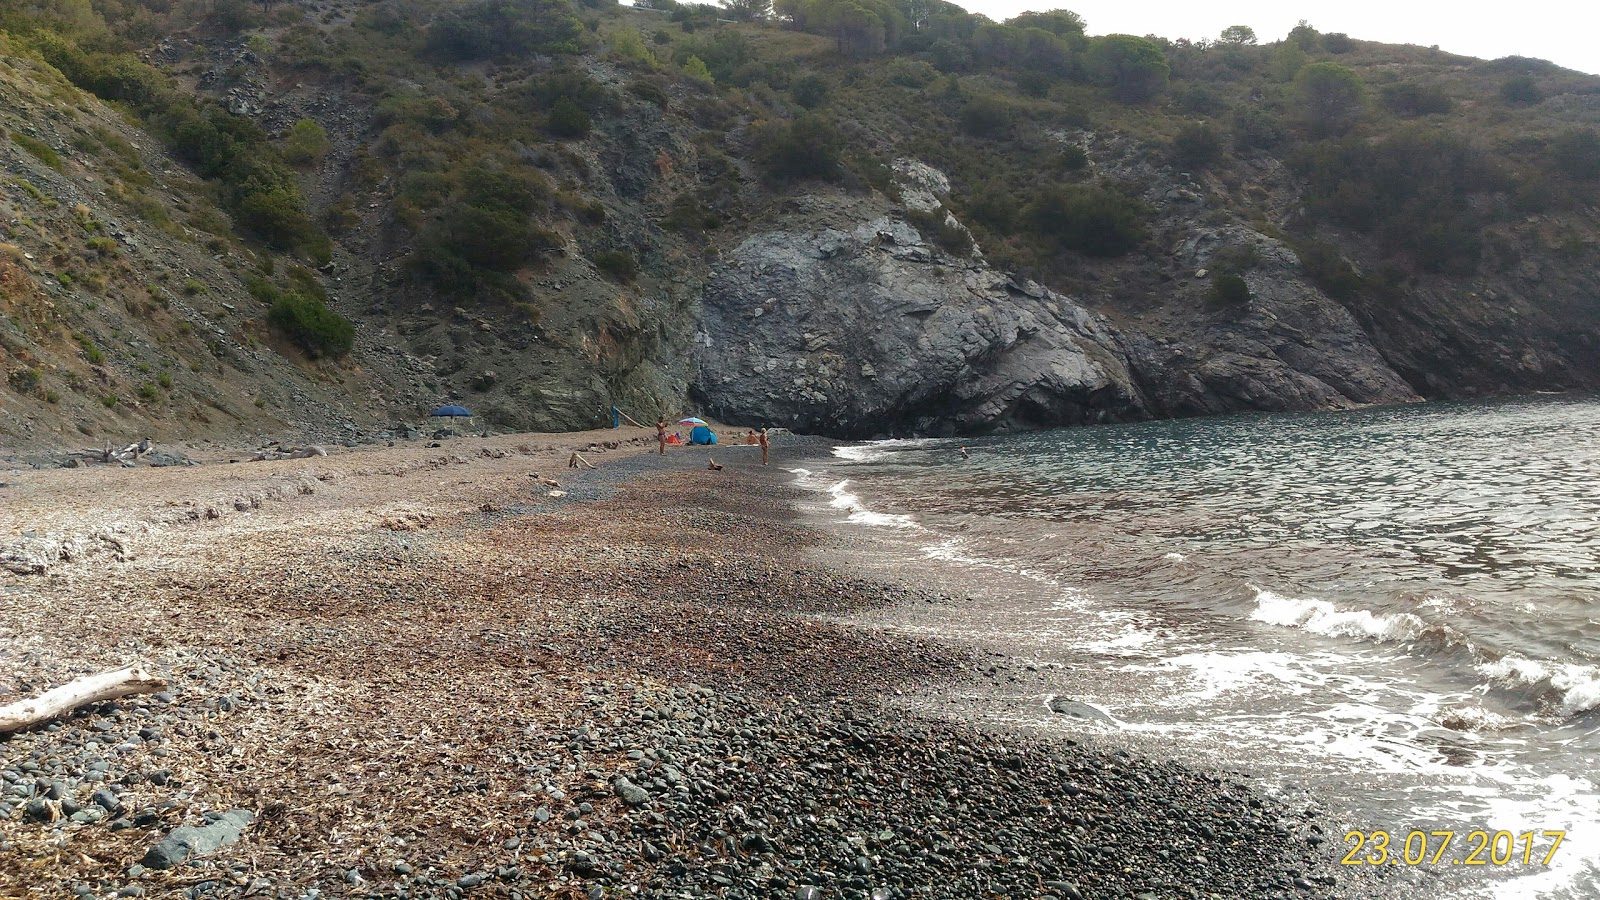 Foto van Spiaggia Le Tombe met gemiddeld niveau van netheid